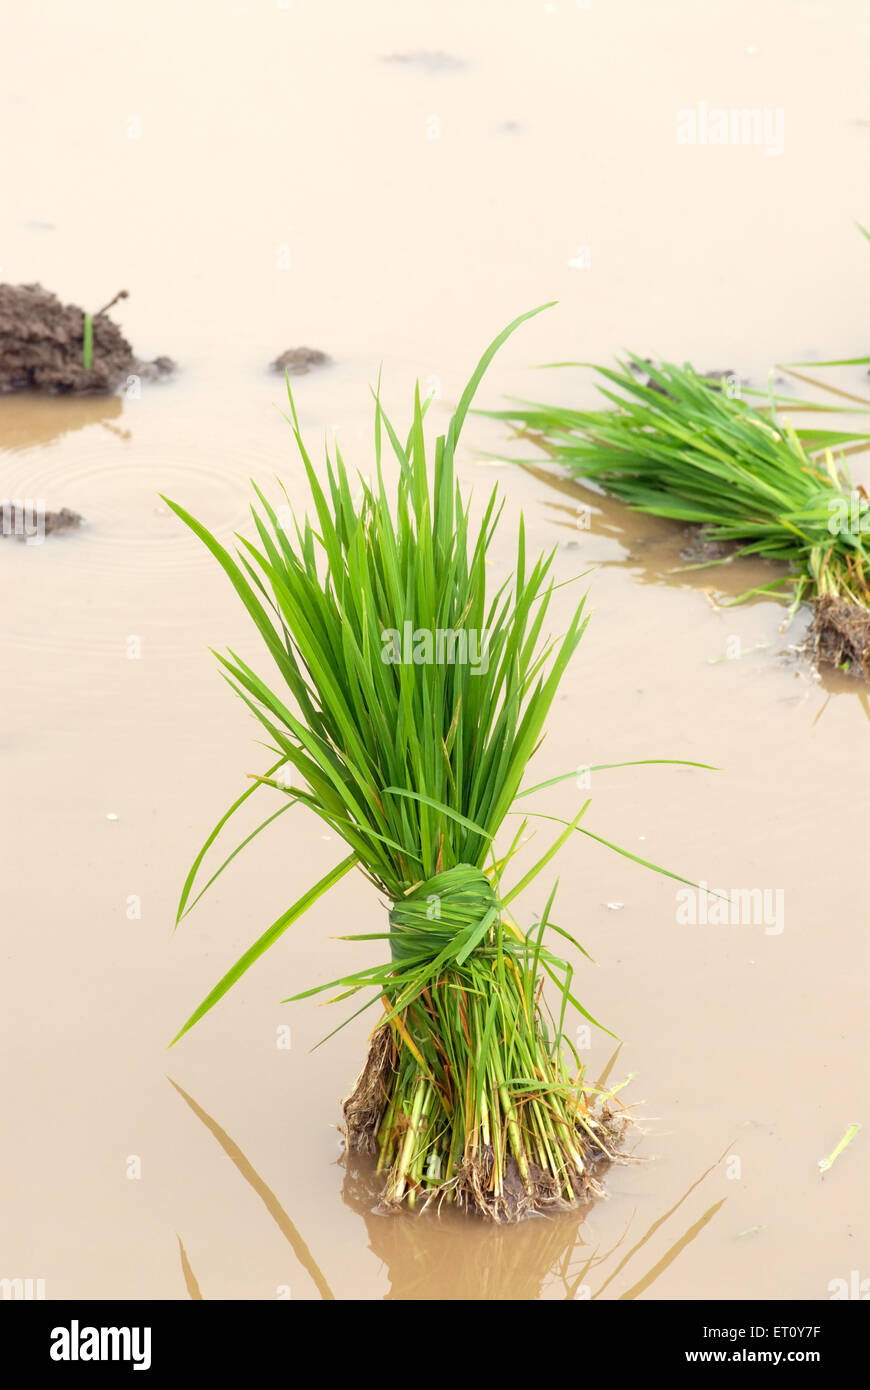 Bande de semis pour la récolte de riz dans l'eau boueuse Madh Malshej Ghat ; ; ; ; Maharashtra Inde Banque D'Images